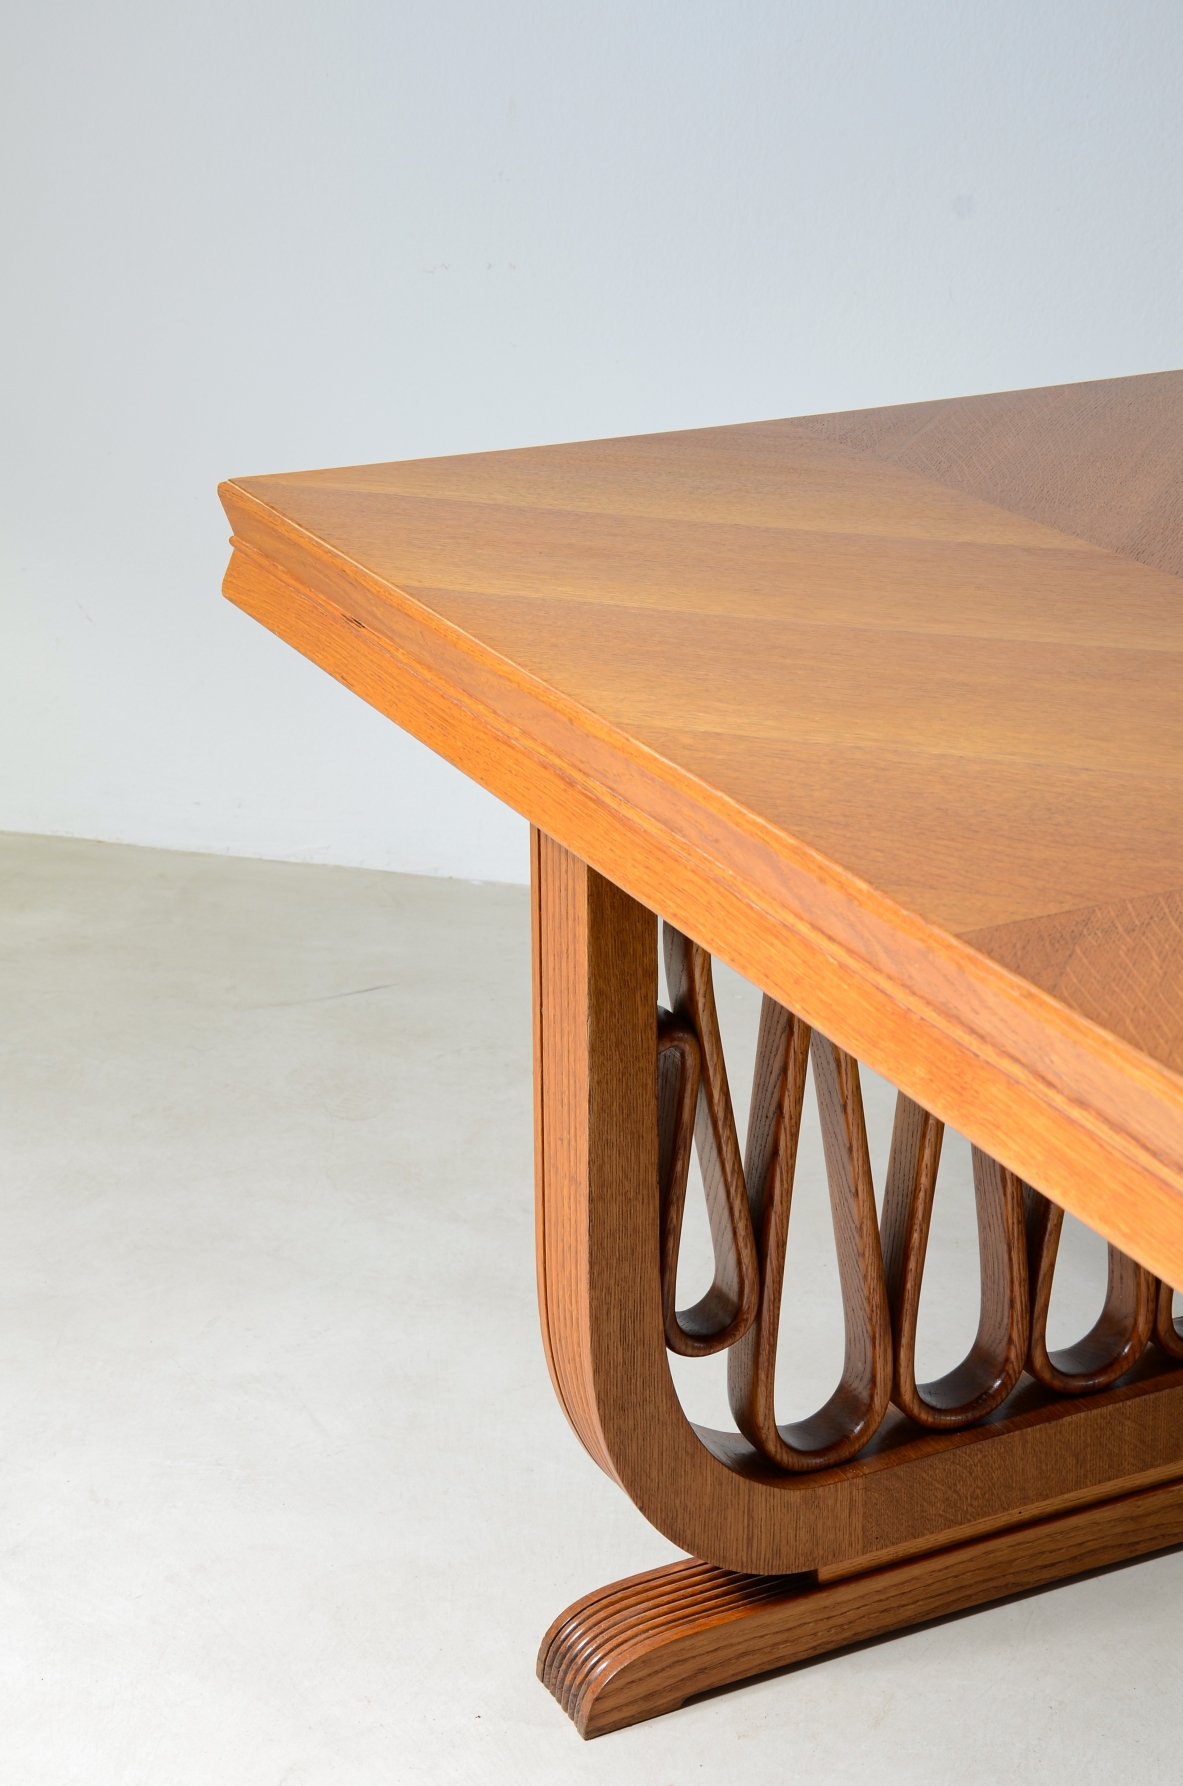 Straordinario tavolo in rovere con montanti grissinati e motivo a nastro nello stile dell'epoca, piano con spessore sagomato.  Manifattura italiana, 1940ca.